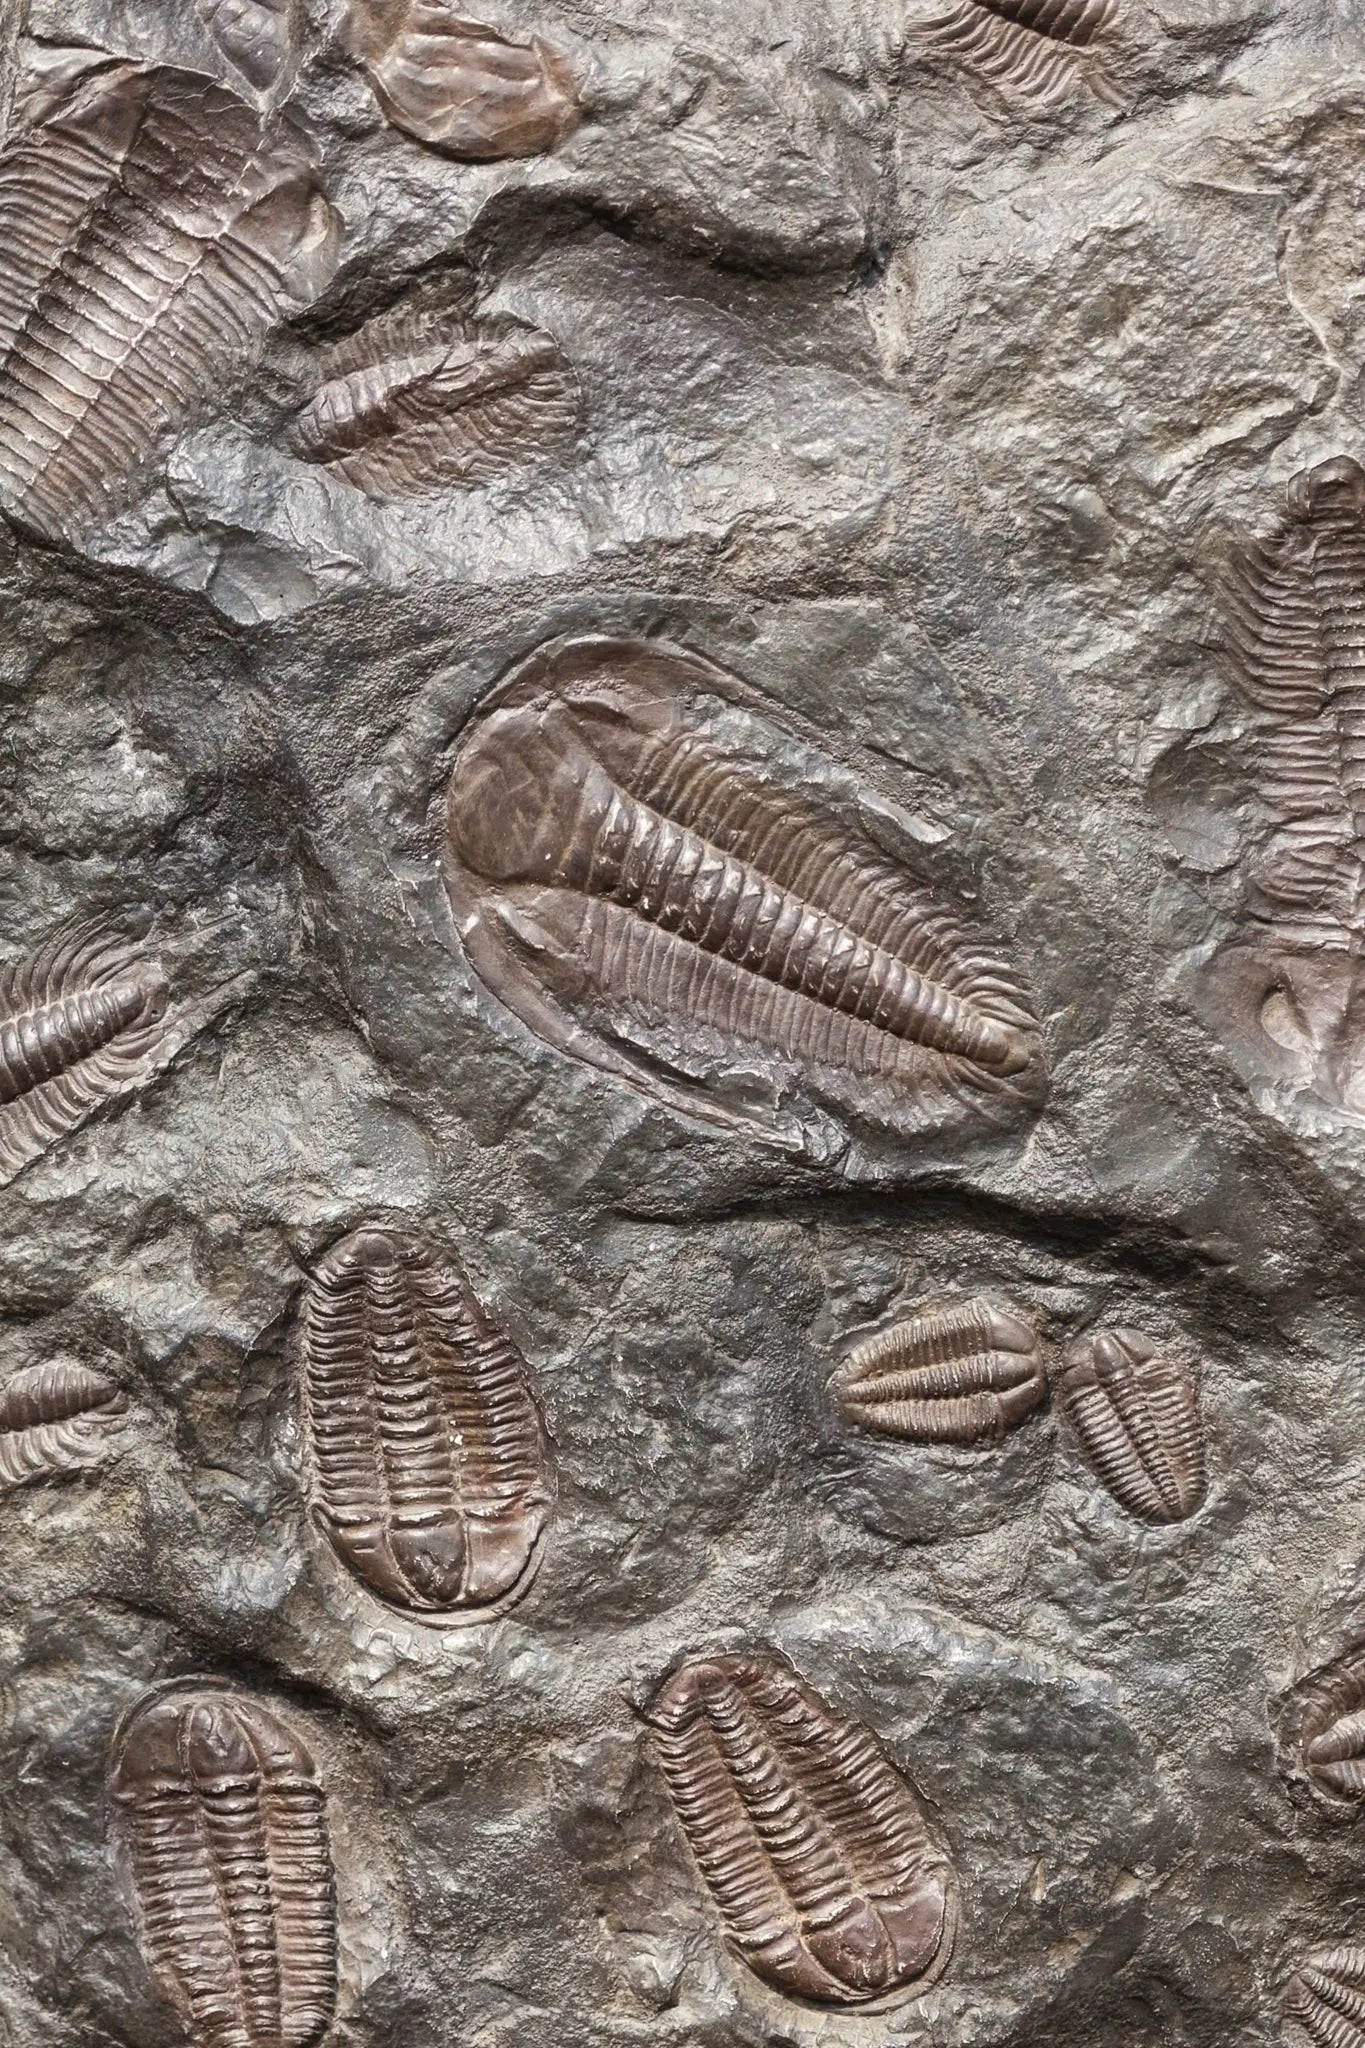 Trilobite Fossil